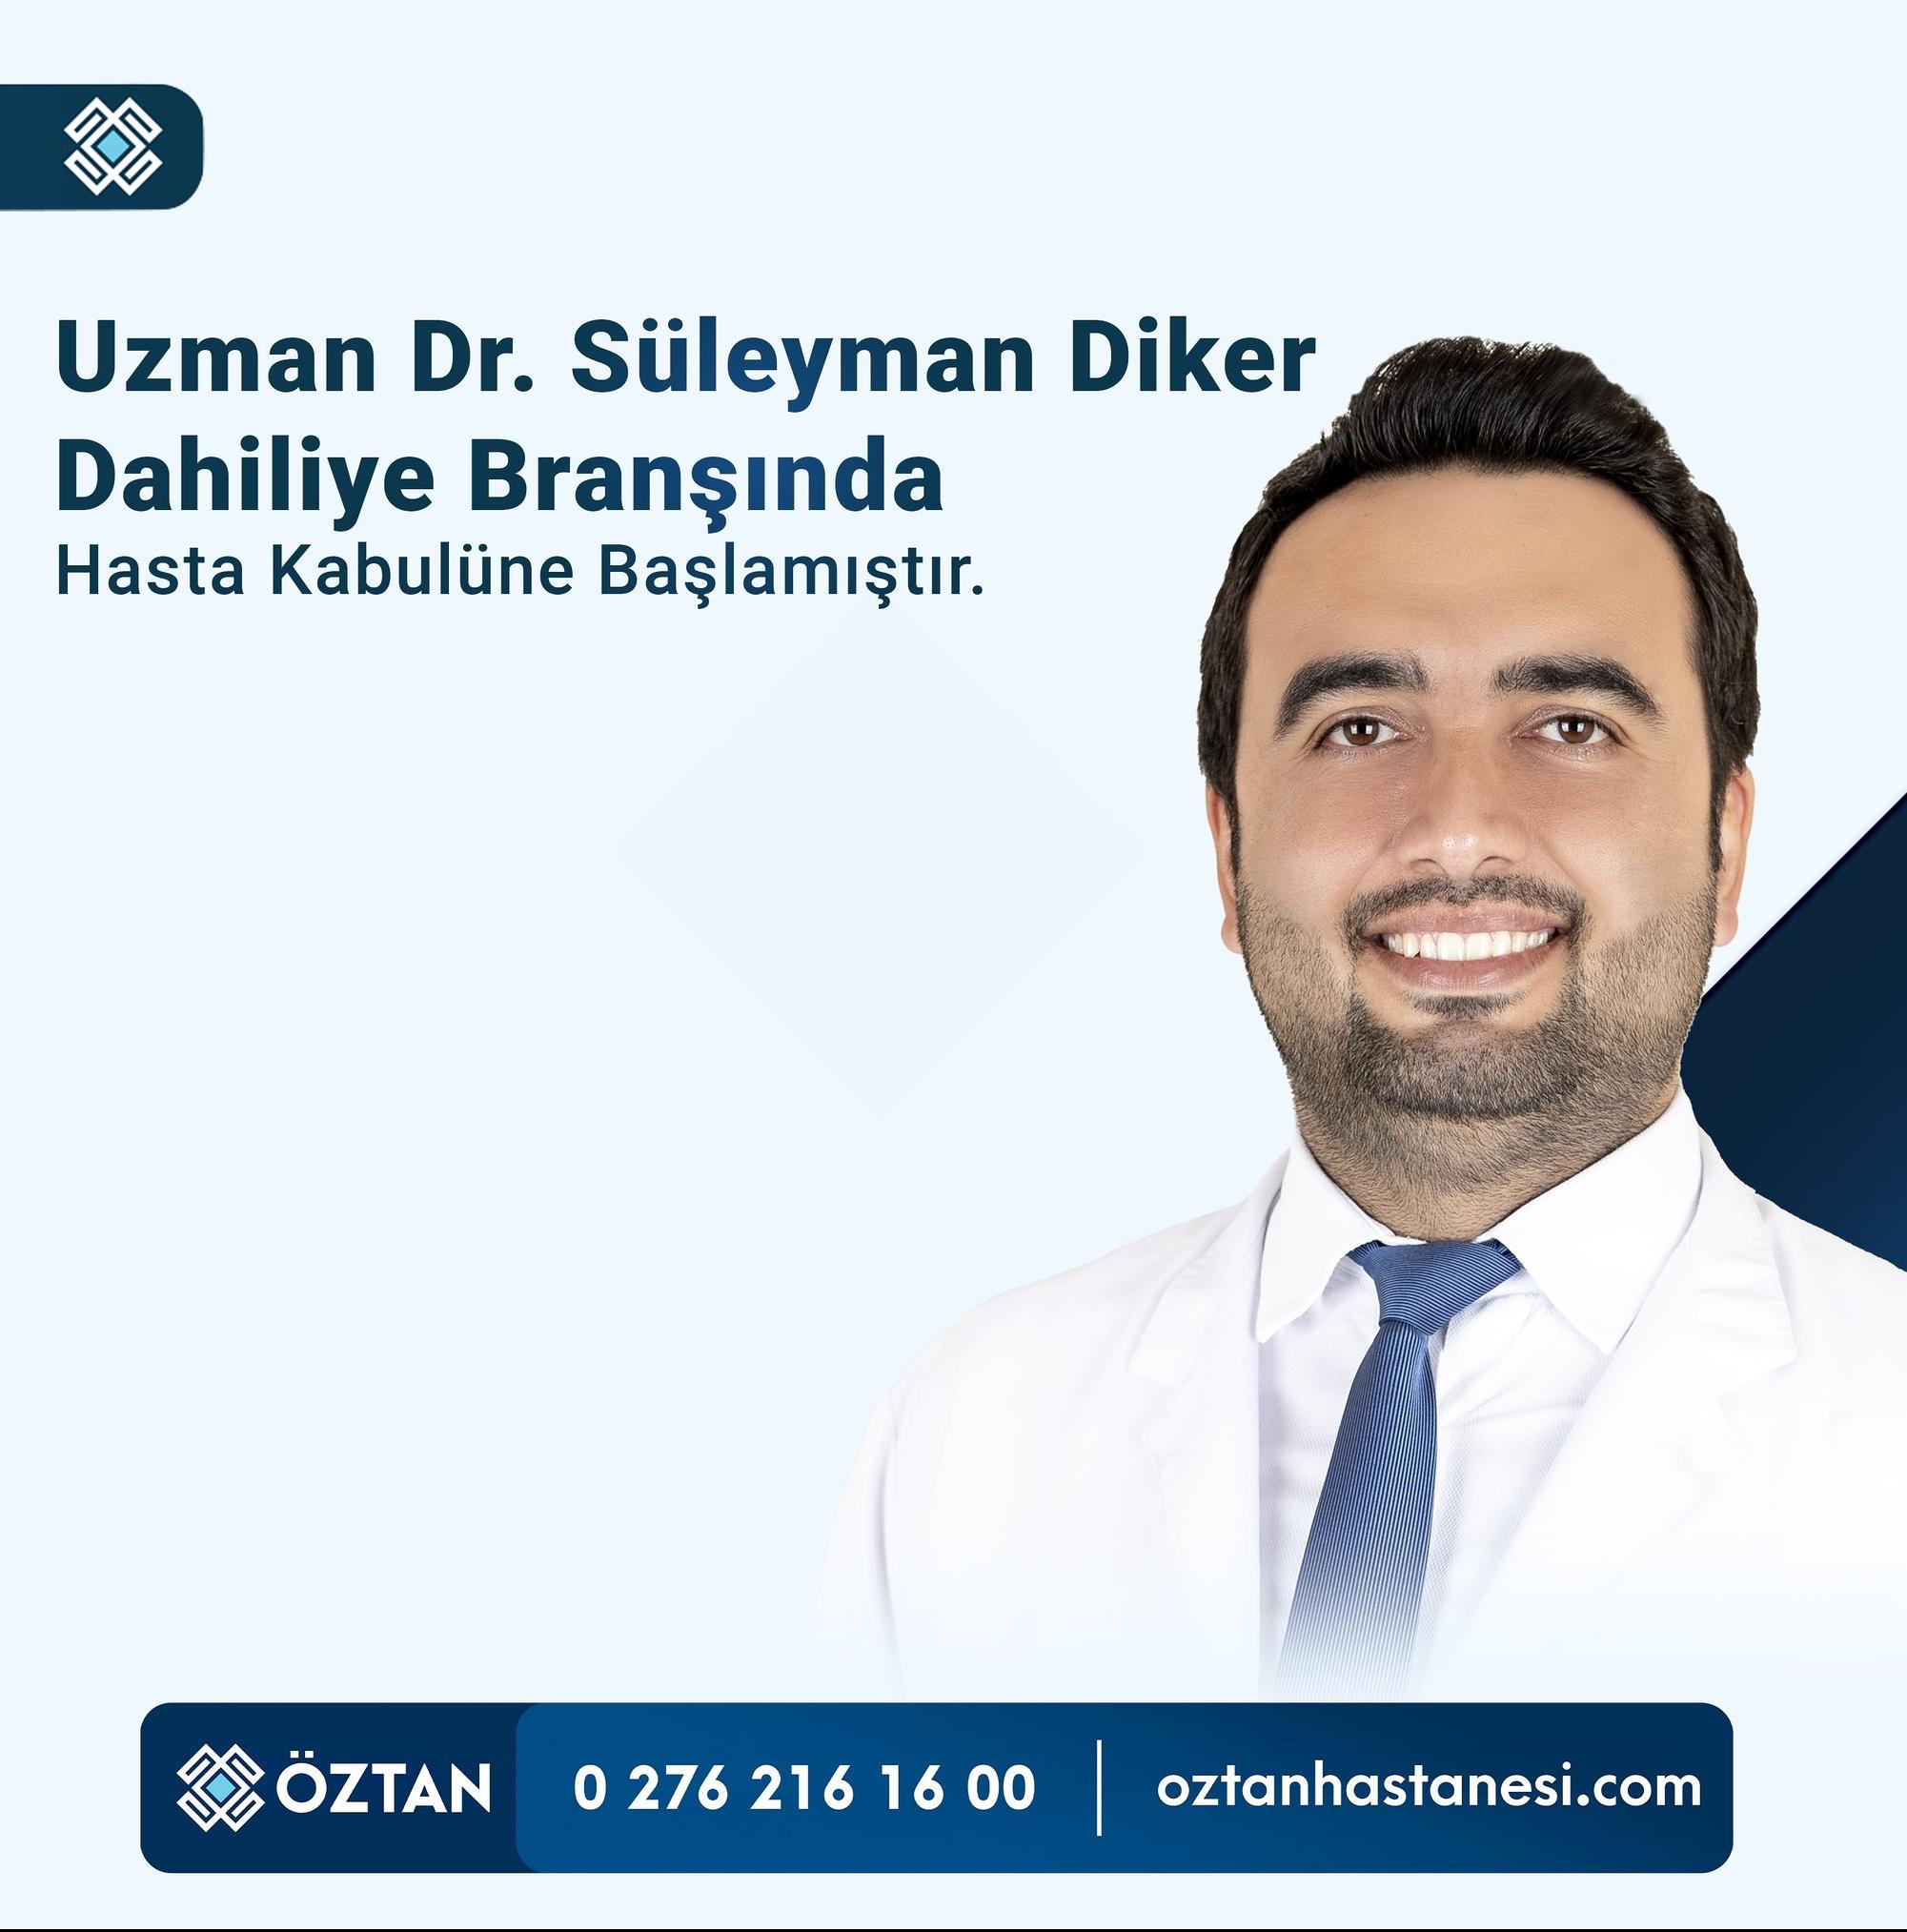 Öztan Hastanesi’nde Yeni Uzman: Dr. Süleyman Diker